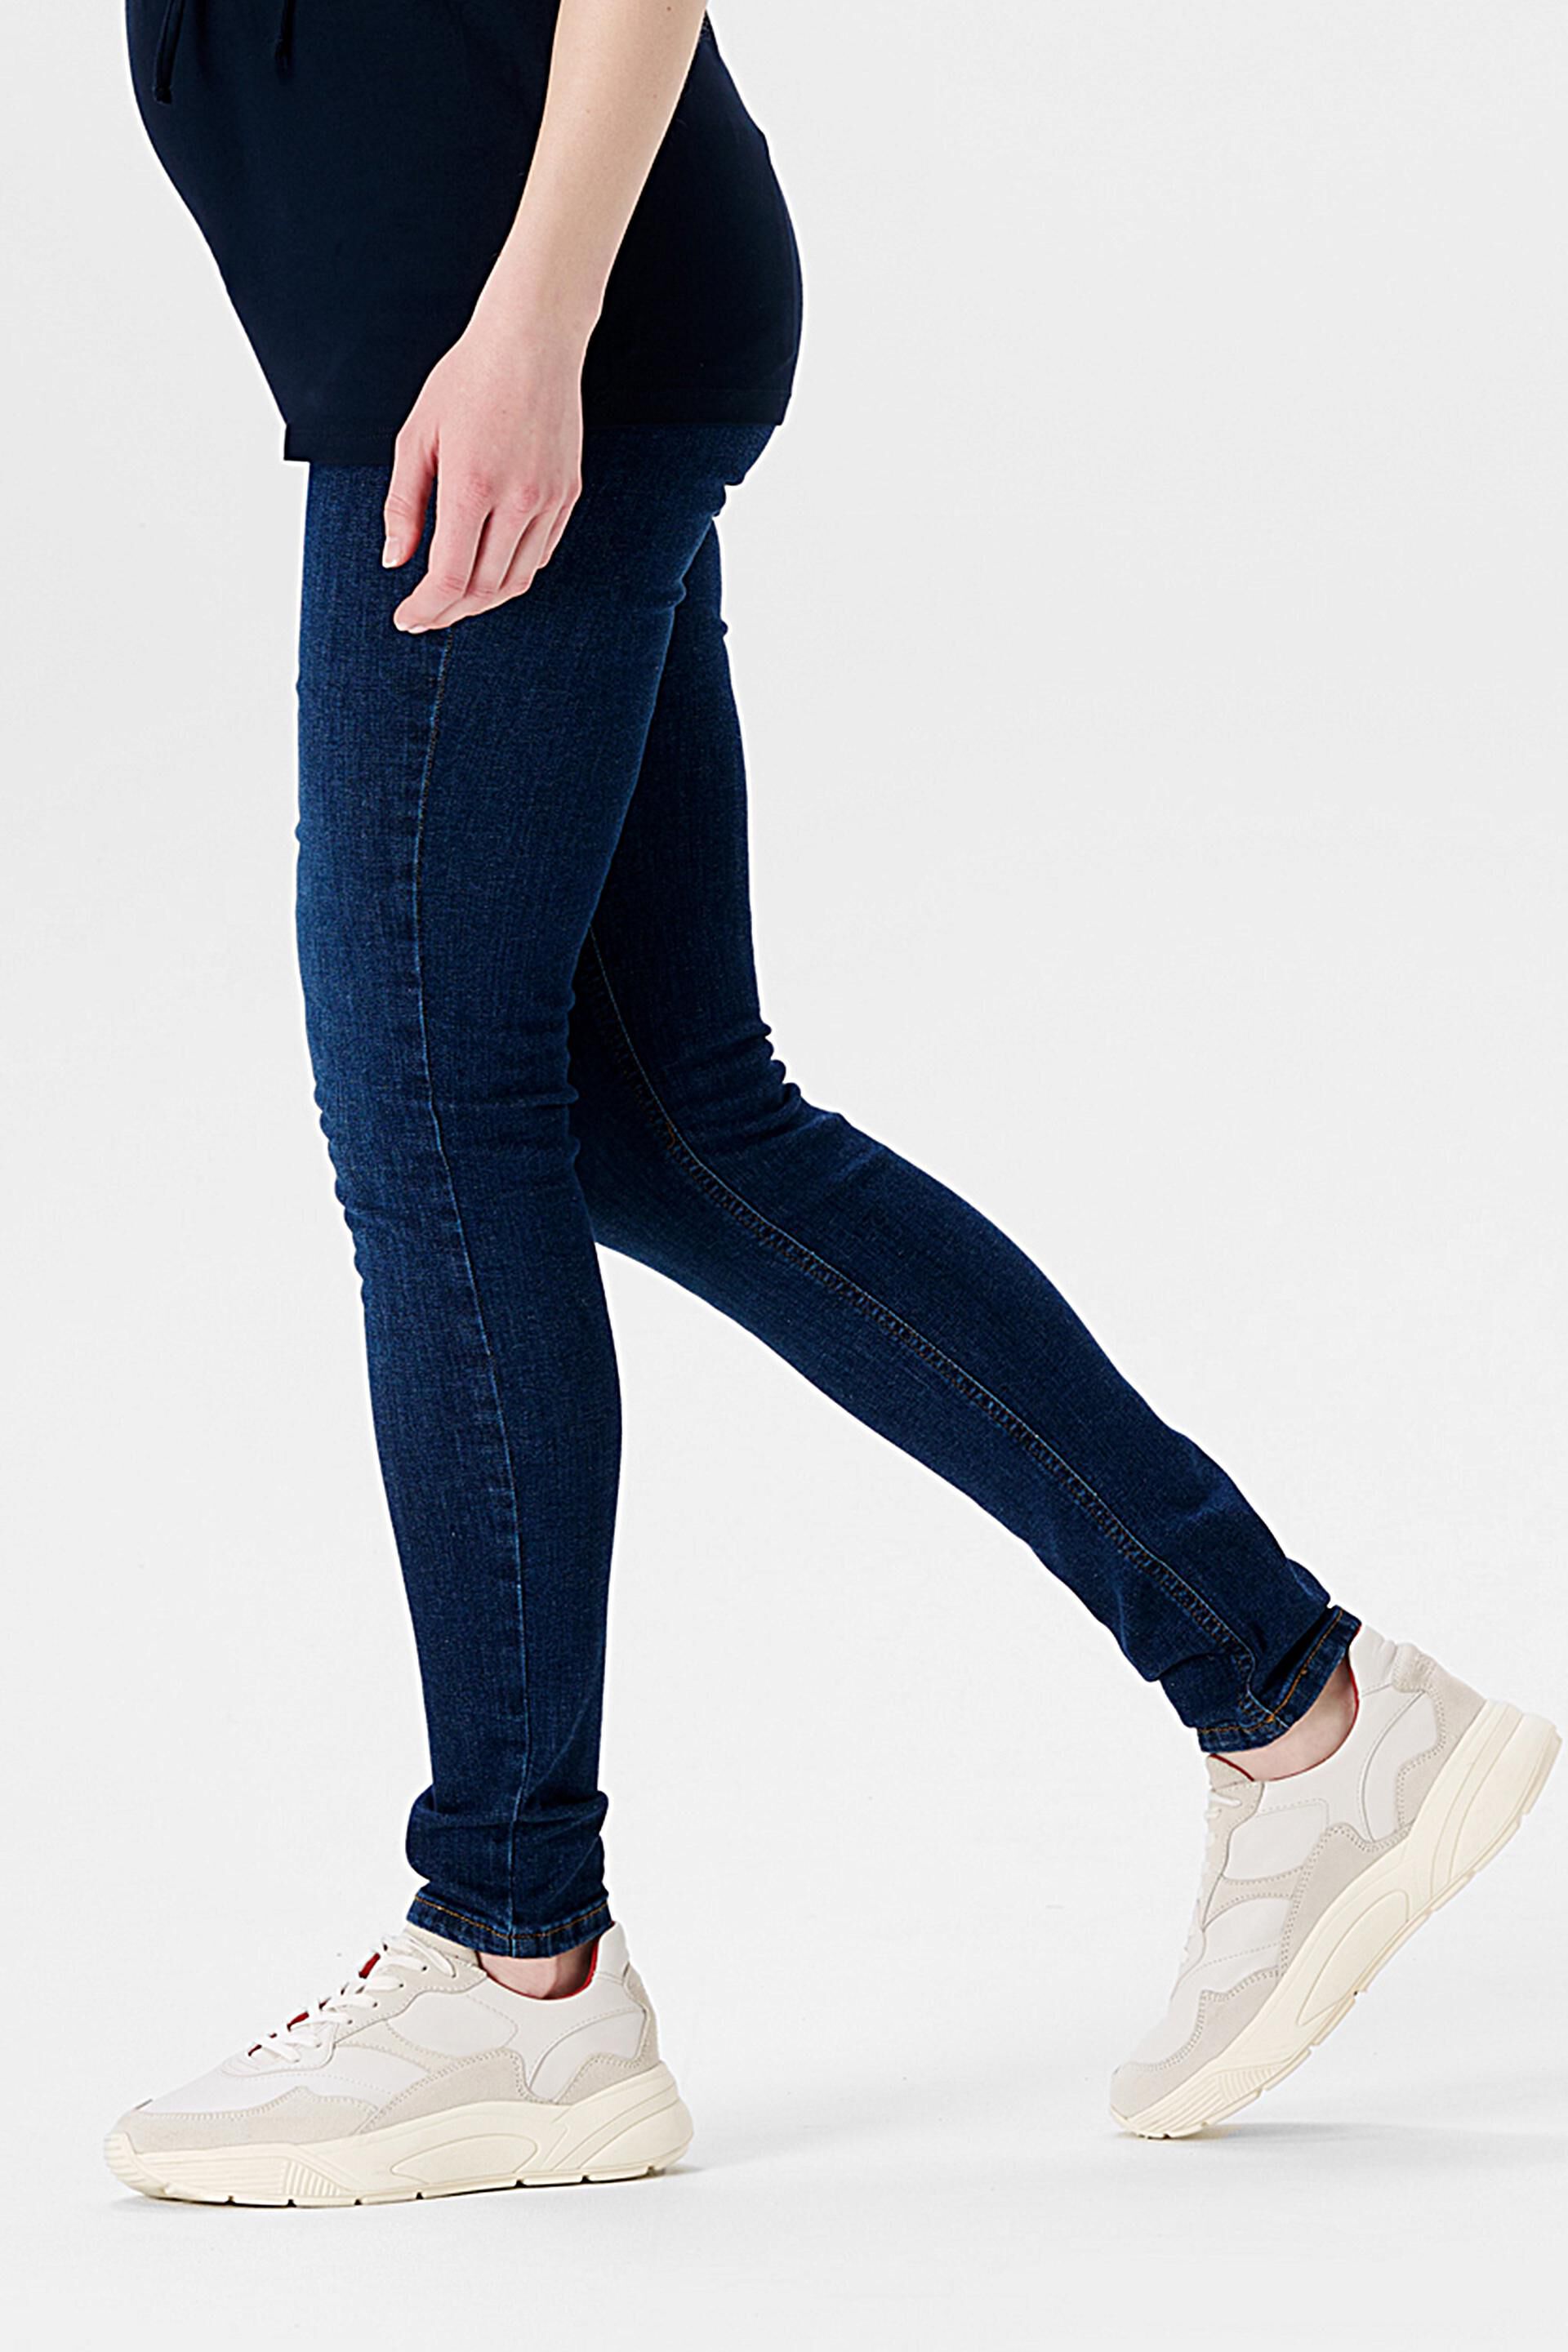 Shop Esprit Skinny-Fit-Jeans mit über dem Bauch Bund reichendem